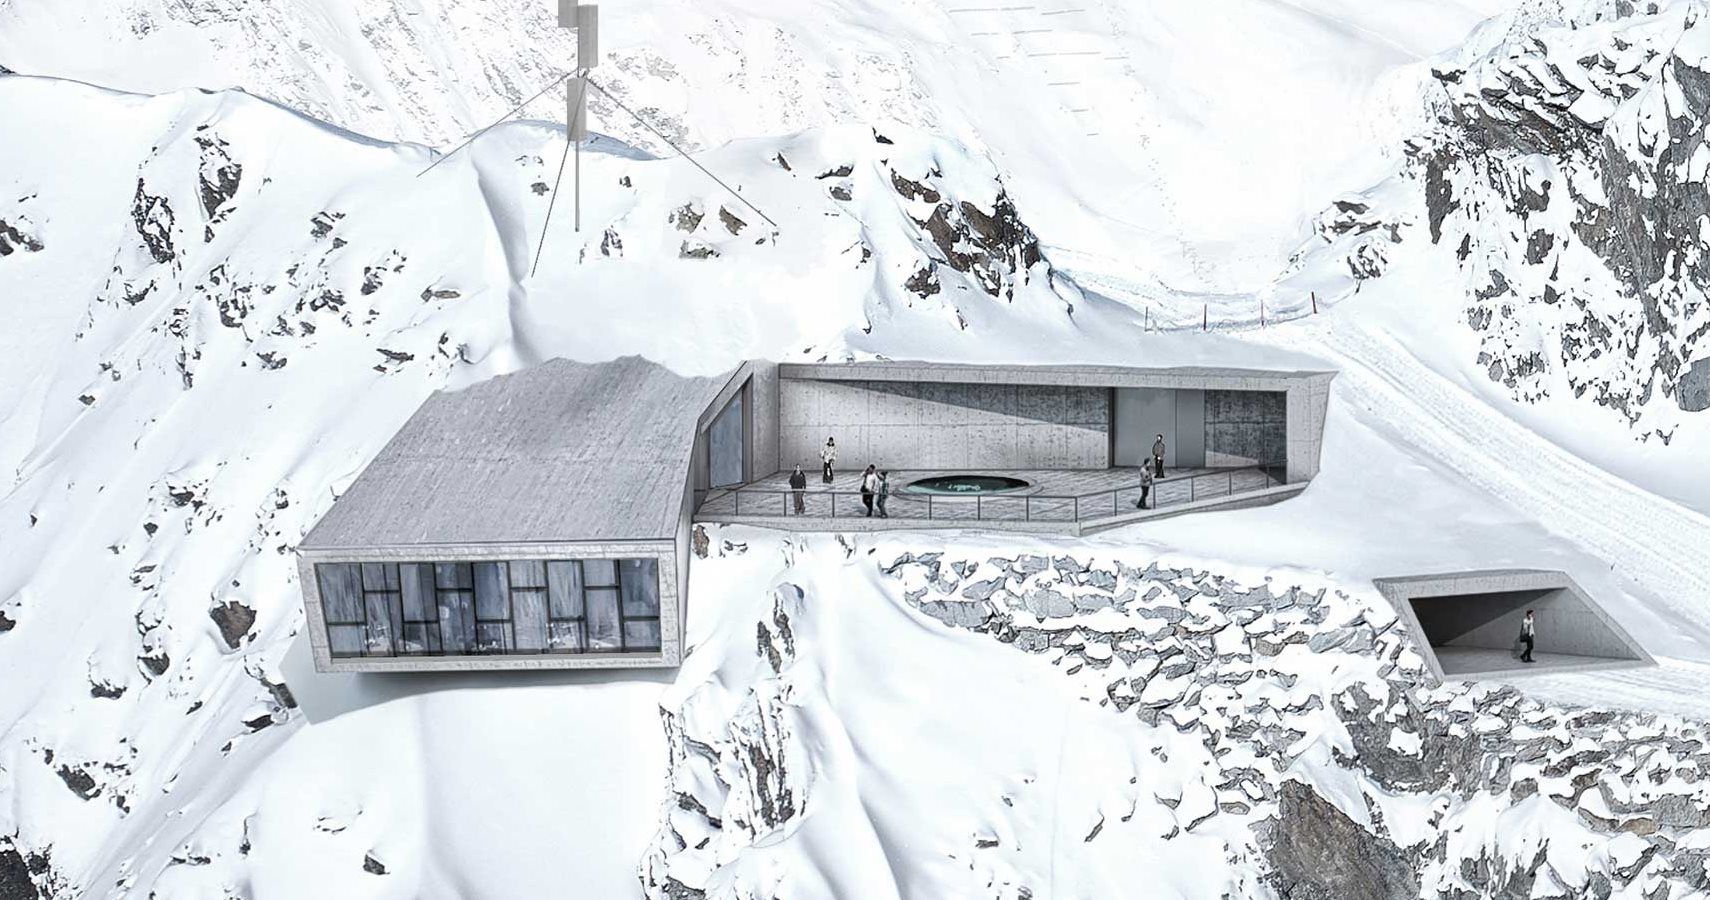 Novo museu dedicado a James Bond foi construído na encosta de uma montanha como o covil secreto de um vilão maligno